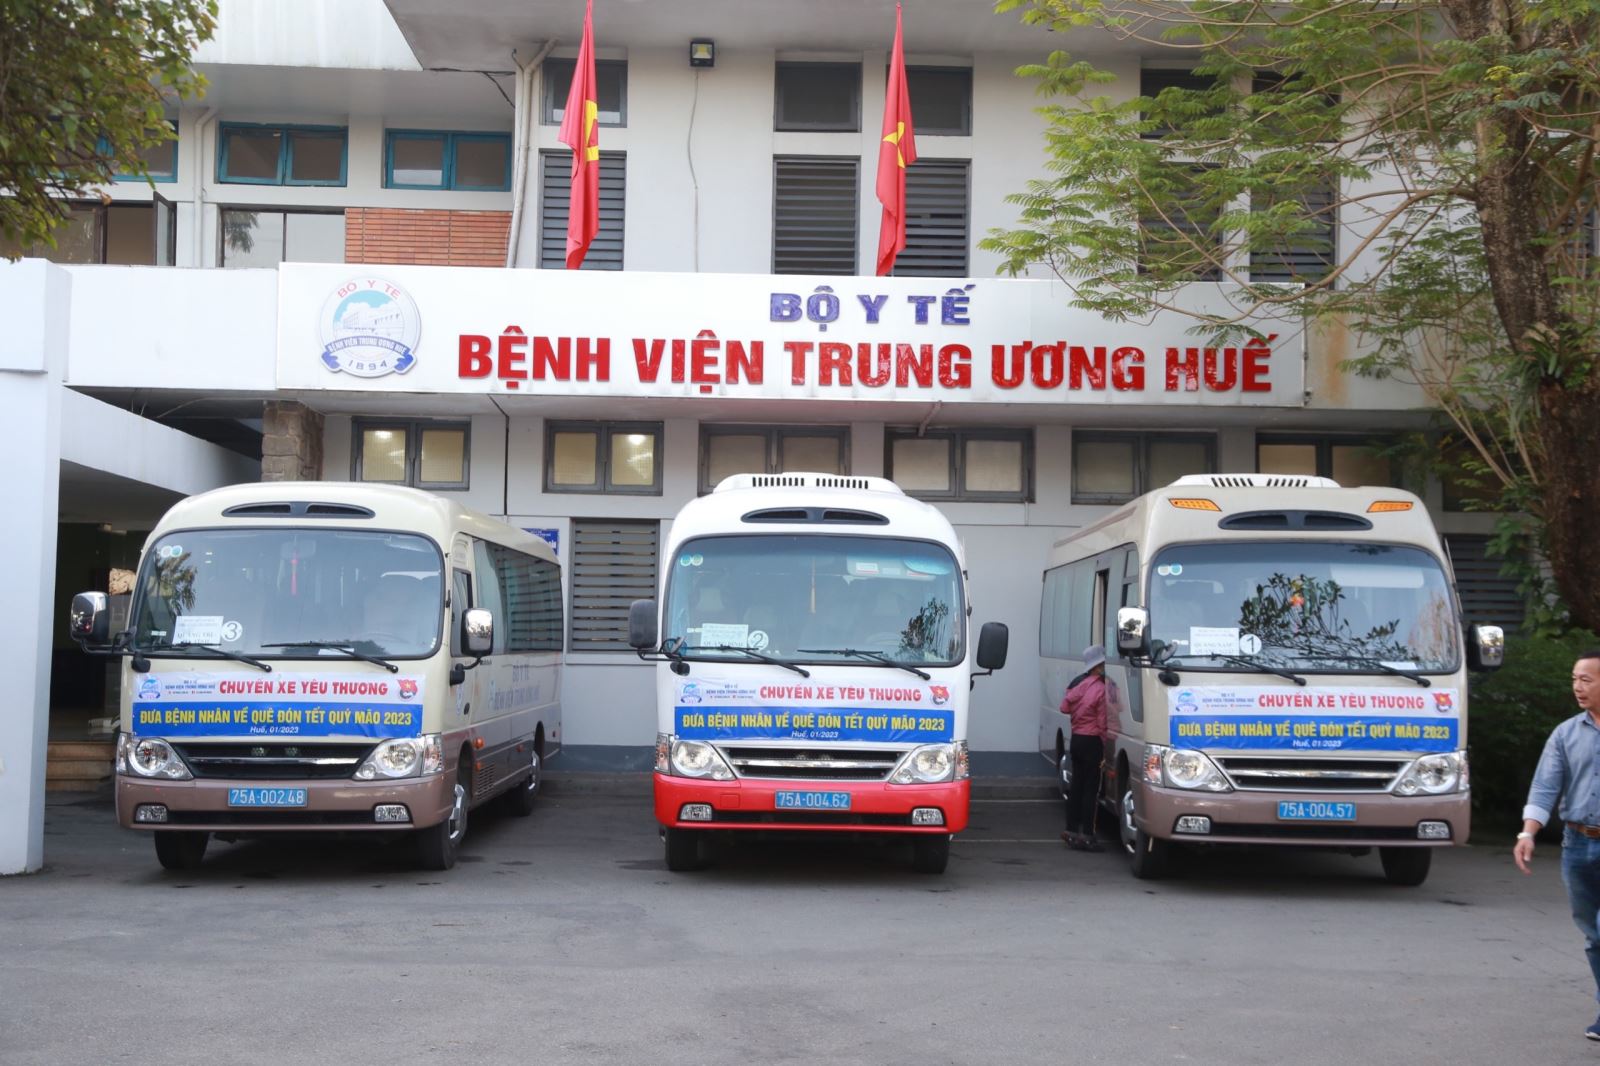 Bệnh viện Trung ương Huế đã tổ chức chương trình “Chuyến xe yêu thương” đưa  bệnh nhân và người nhà có hoàn cảnh khó khăn về quê đón Tết Quý Mão 2023.